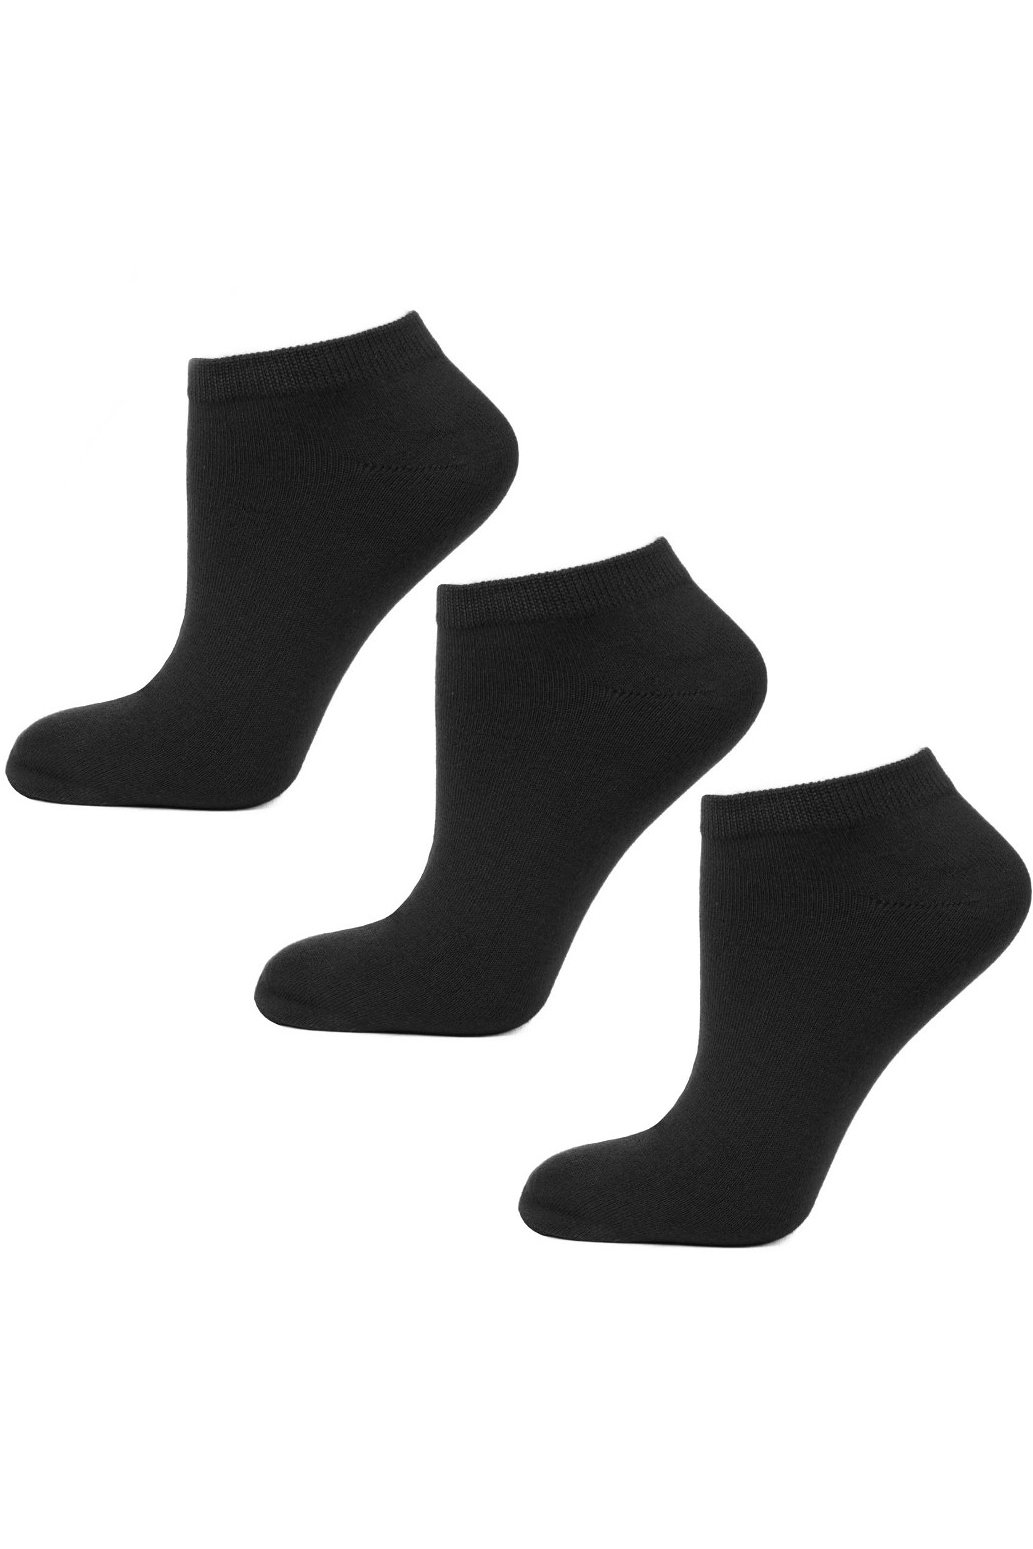 3 PACK ponožky Moraj BSK200-003 - bambusové Čierna 43-45